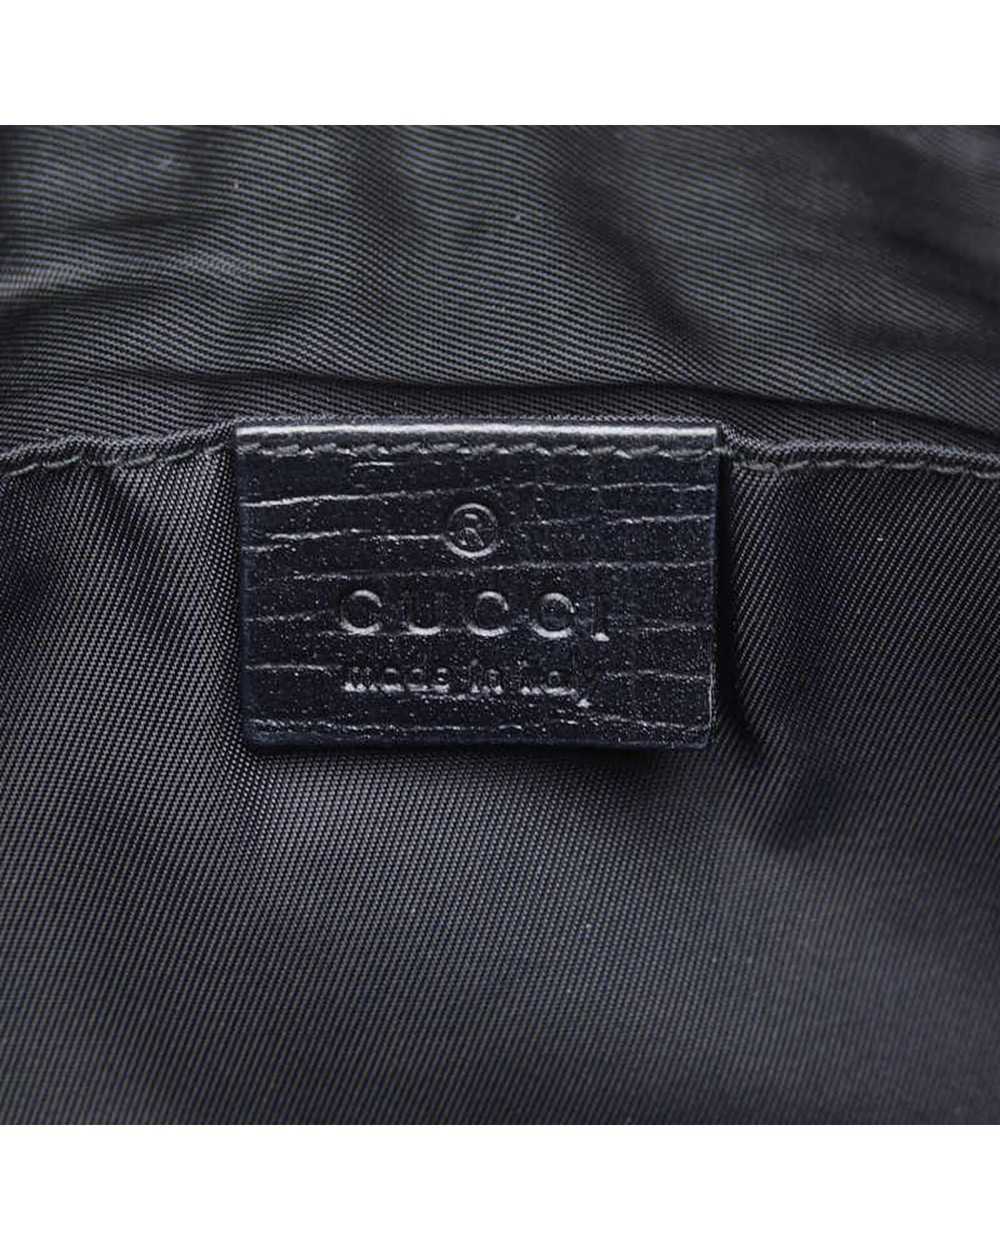 Gucci Black GG Supreme Belt Bag in Excellent Cond… - image 7